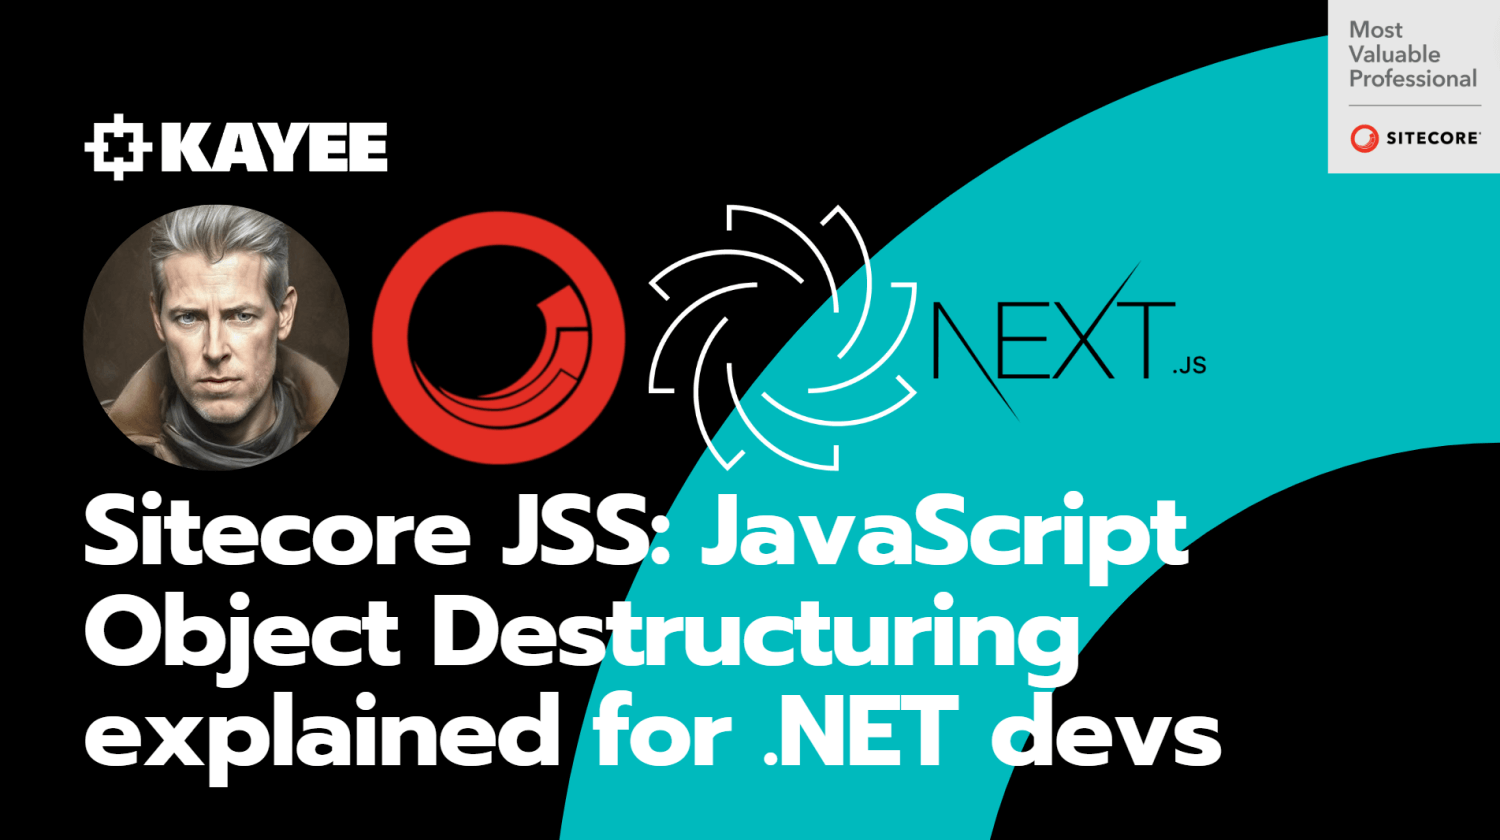 Sitecore JSS: JavaScript Object Destructuring explained for .NET devs